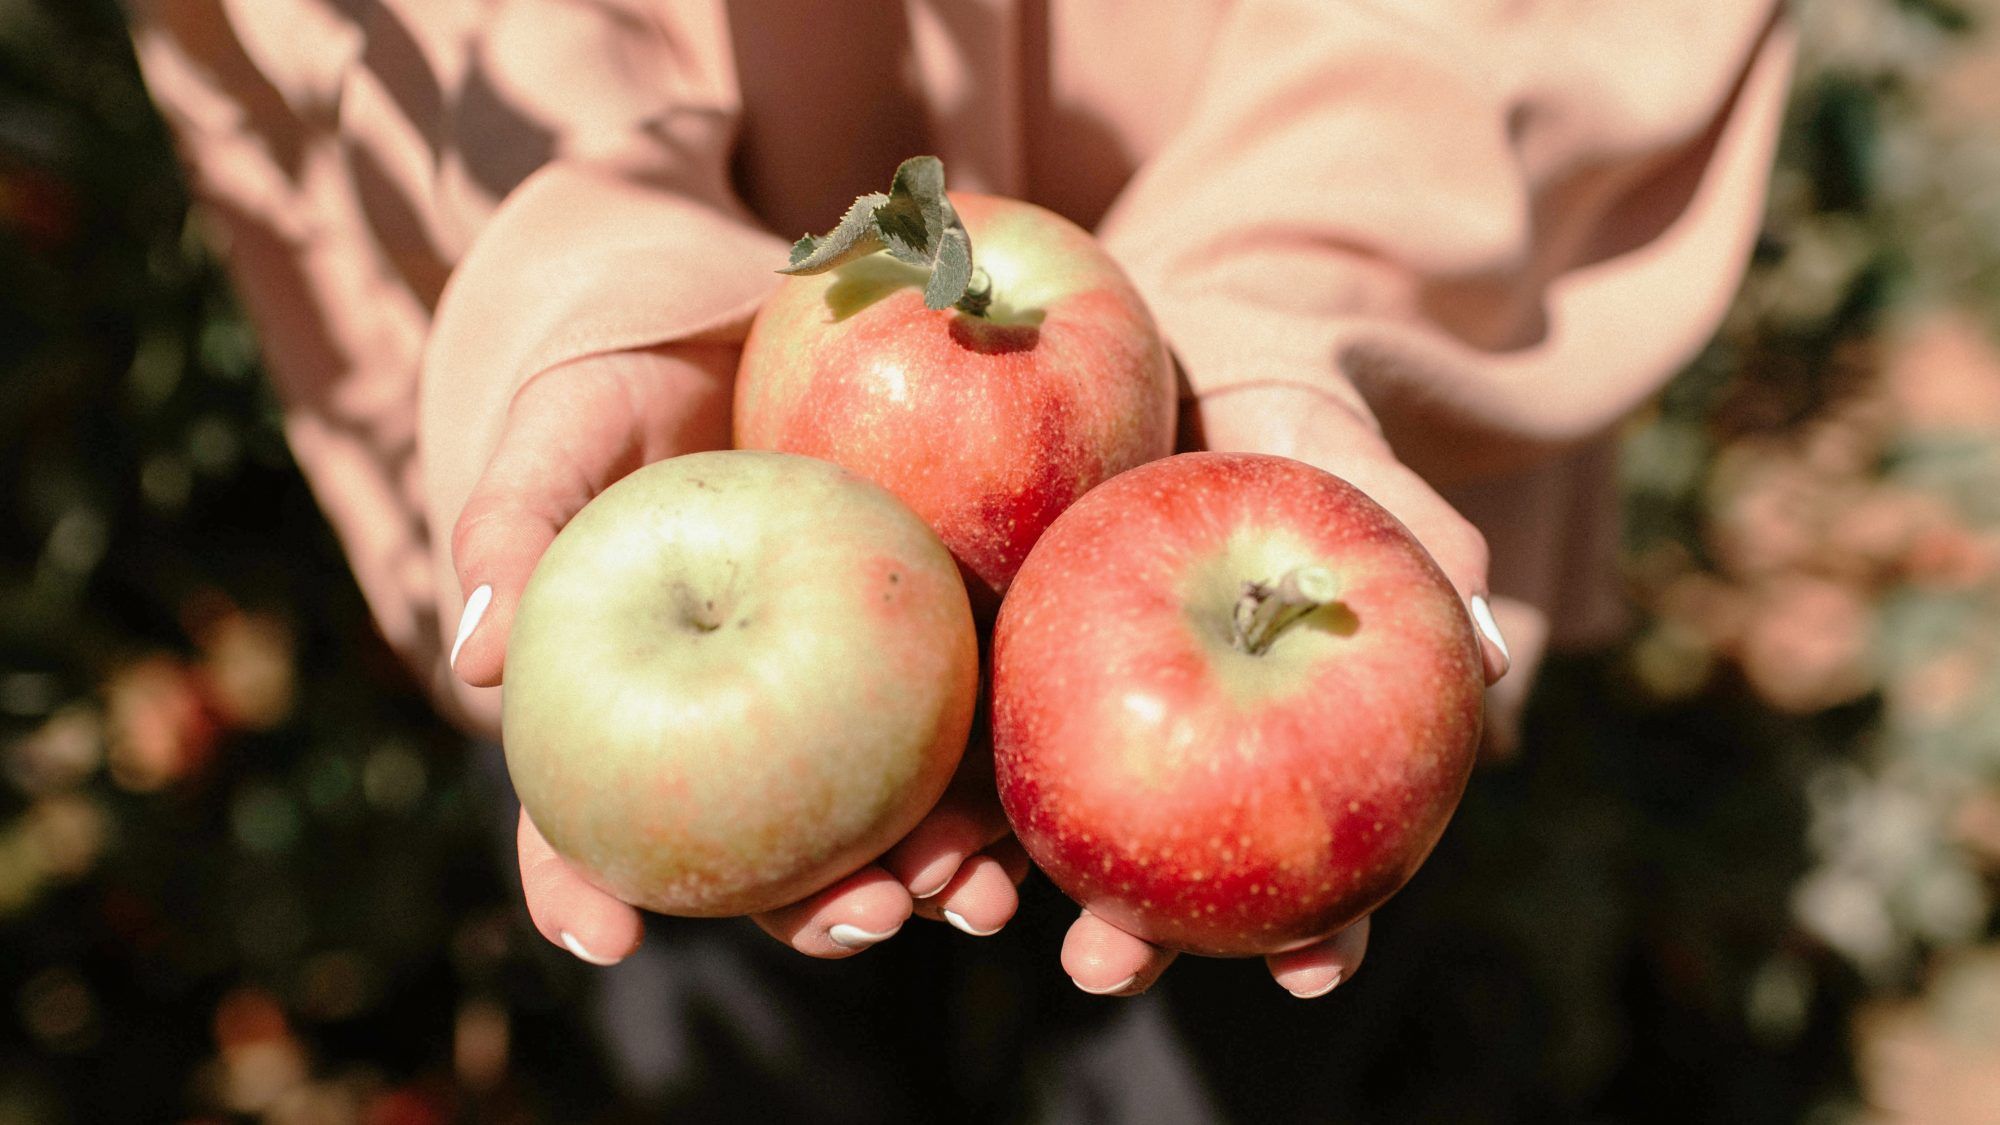 أفضل 50 مكانًا للذهاب إليه قطف التفاح من Yelp: امرأة تحمل تفاحًا في الخريف